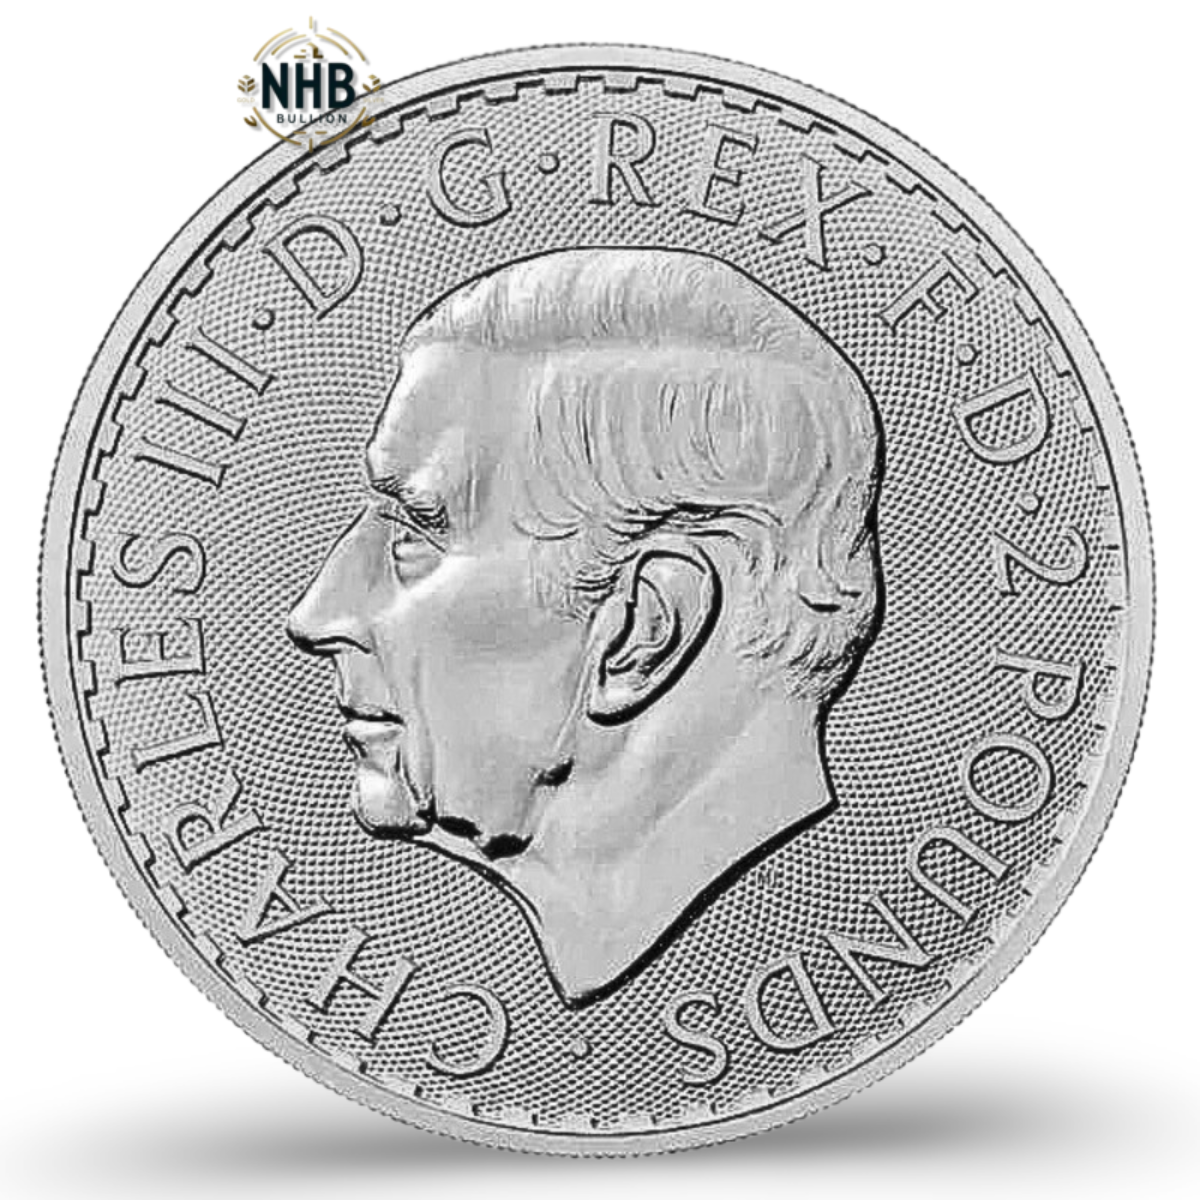 1oz Britannia Silver Coin (Random Year)